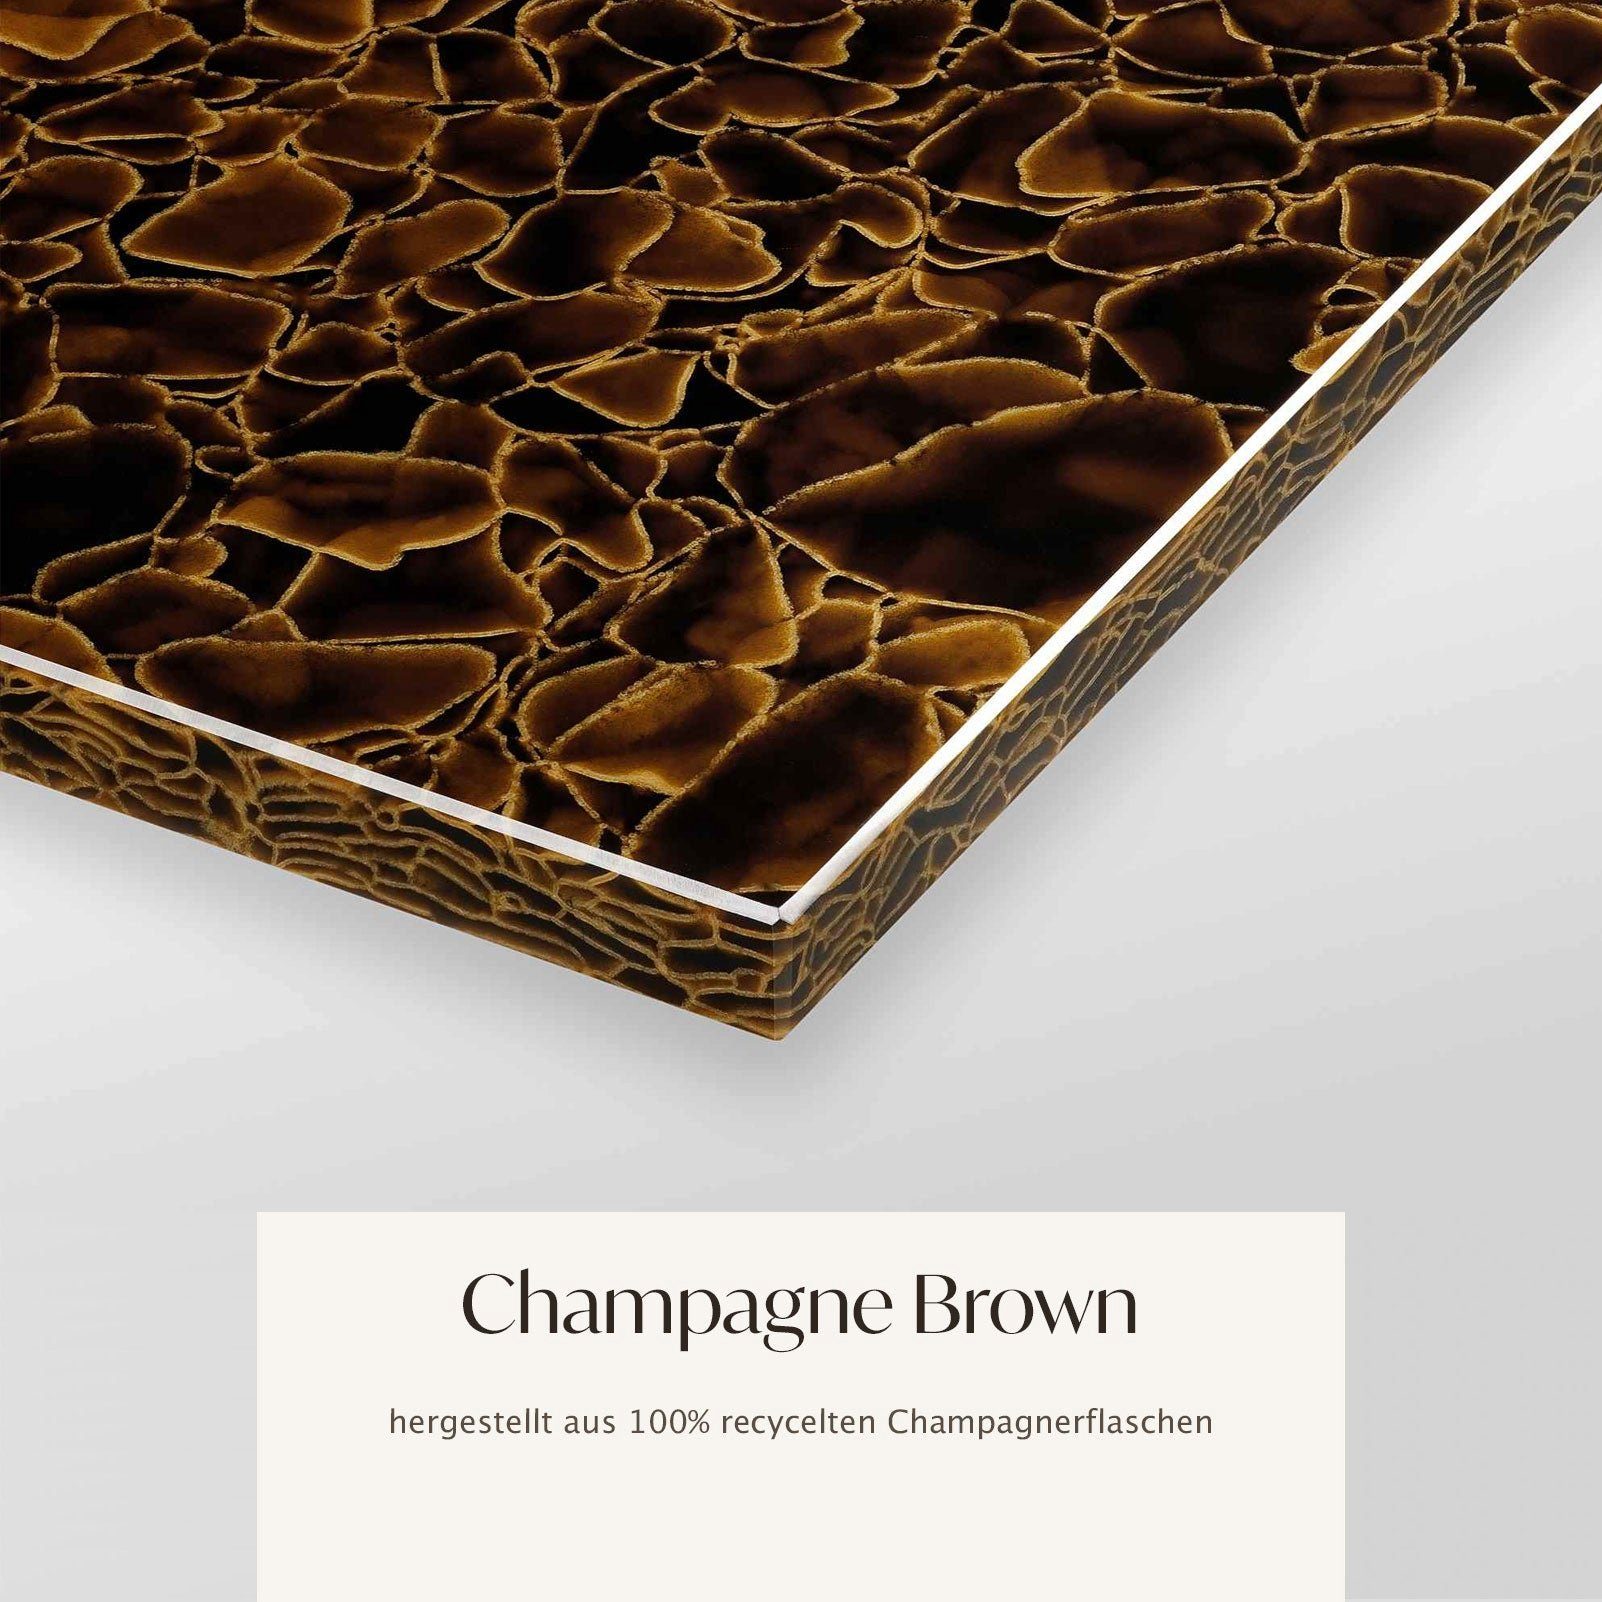 Champagne Brown MAGNA Tablet, Metallgestell, NOTTING HILL mit Atelier GLASKERAMIK, 30x17x5cm Dekotablett silber gold